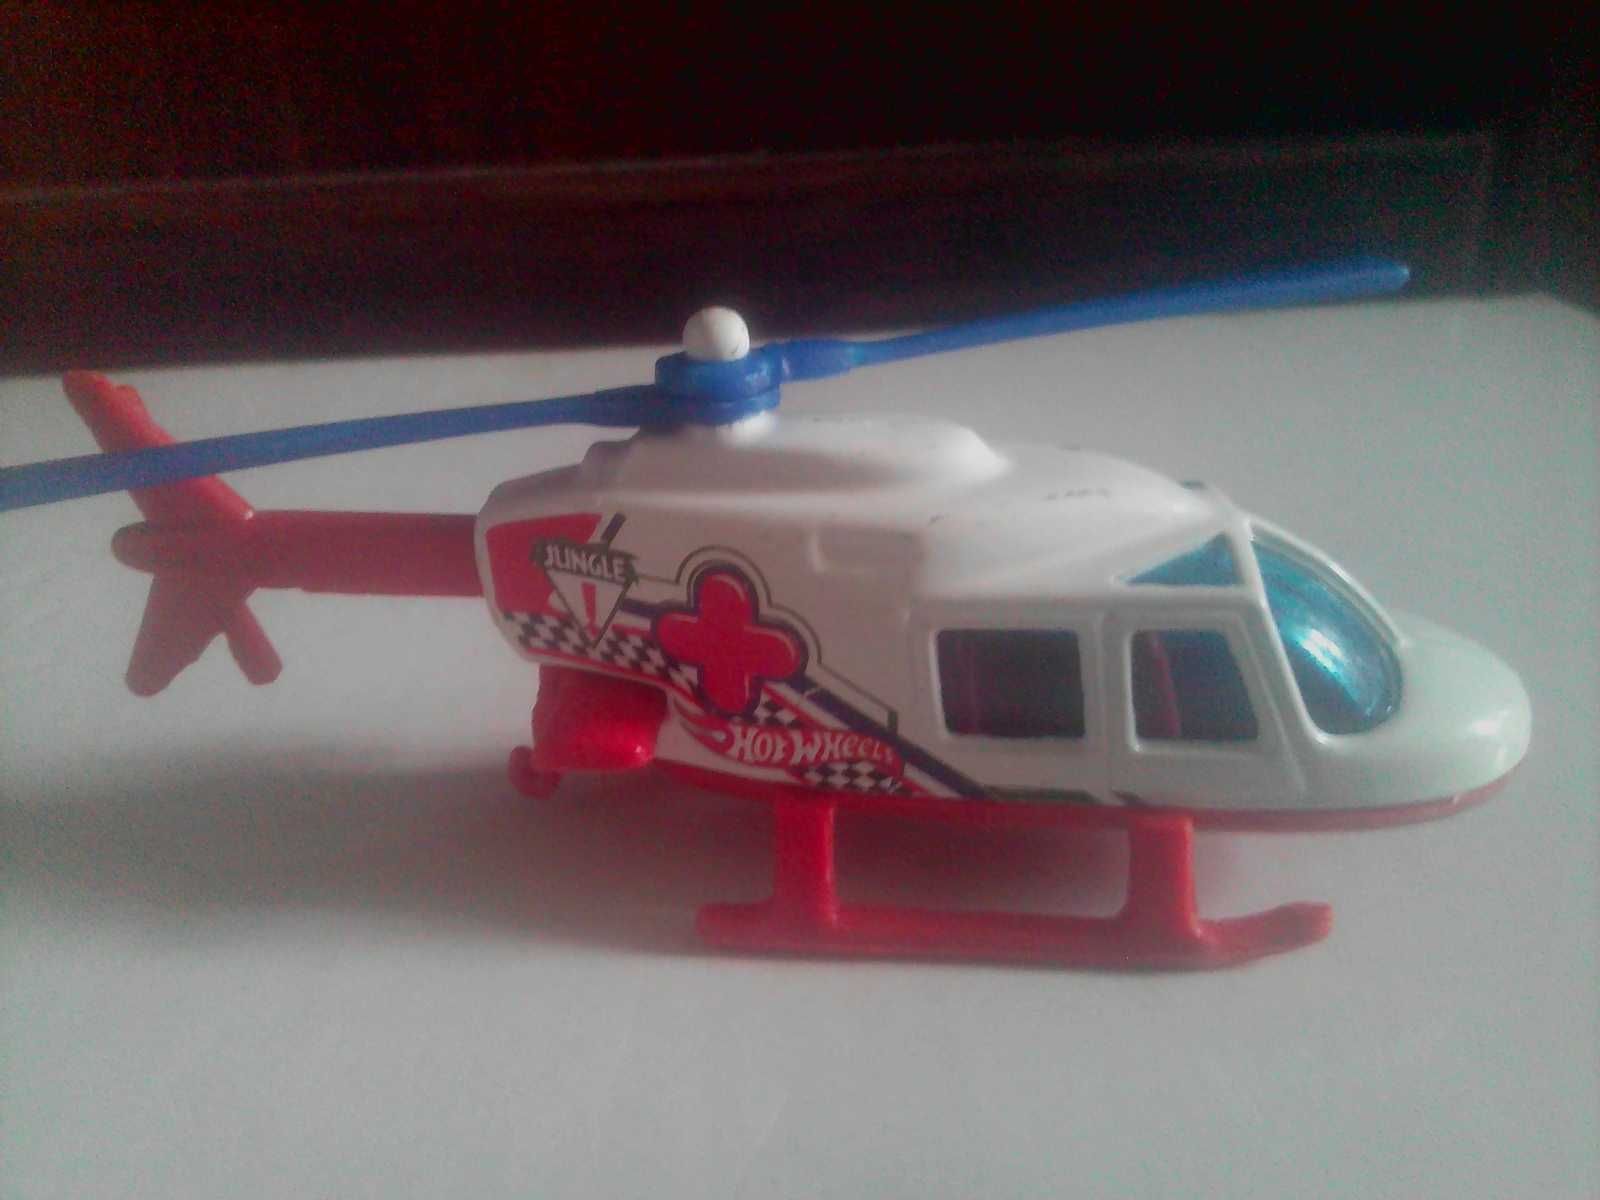 Детская игрушка Hot Wneels вертолёт Jungle-модель